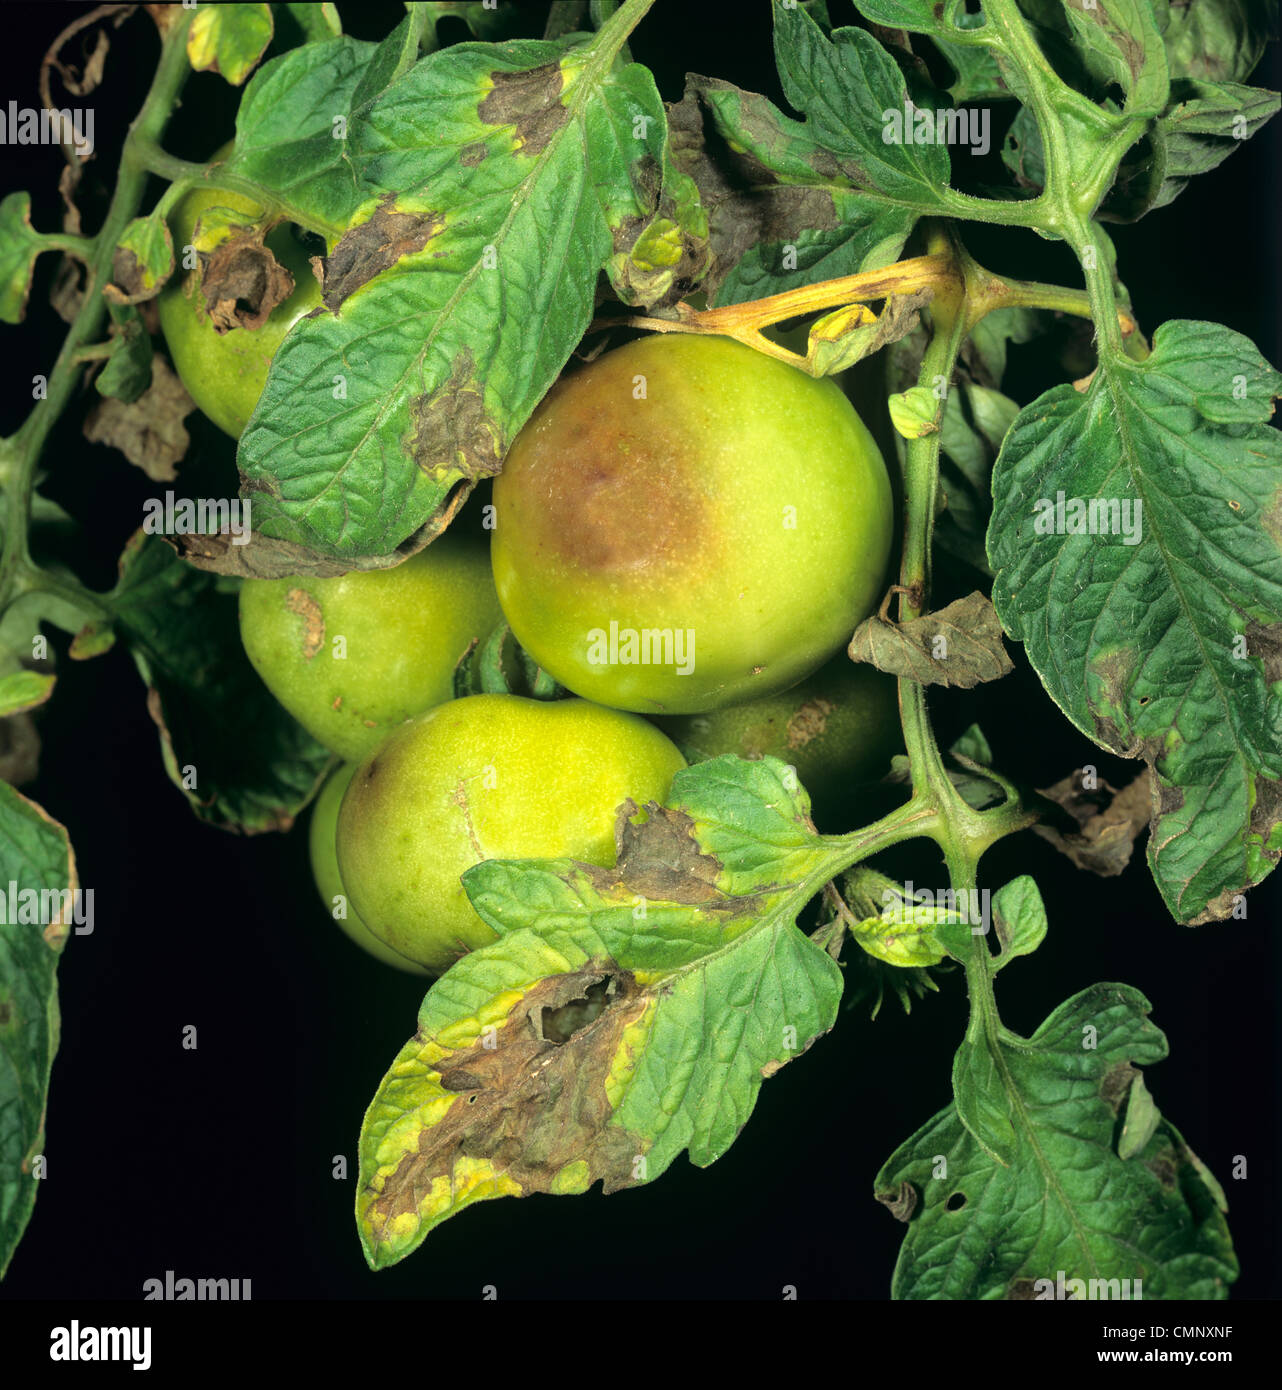 El tizón tardío (Phytophthora infestans) Daños en hojas y frutos de tomate Foto de stock